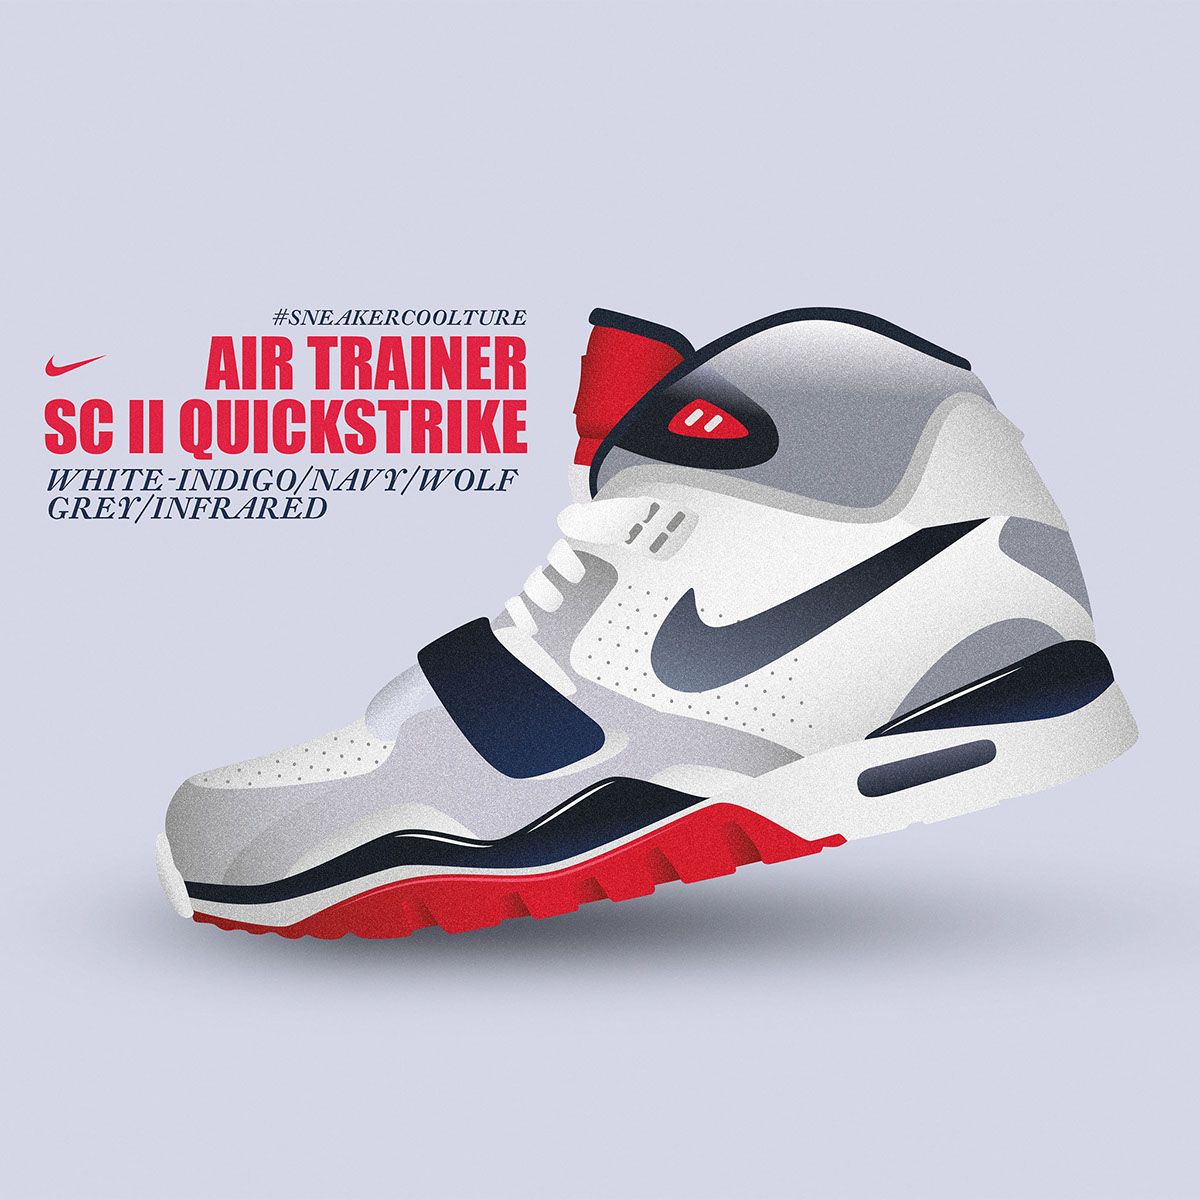 sneakers Weekly Nike adidas New Balance free Wallpapers air max Yeezy II air jordan MakeItNYC